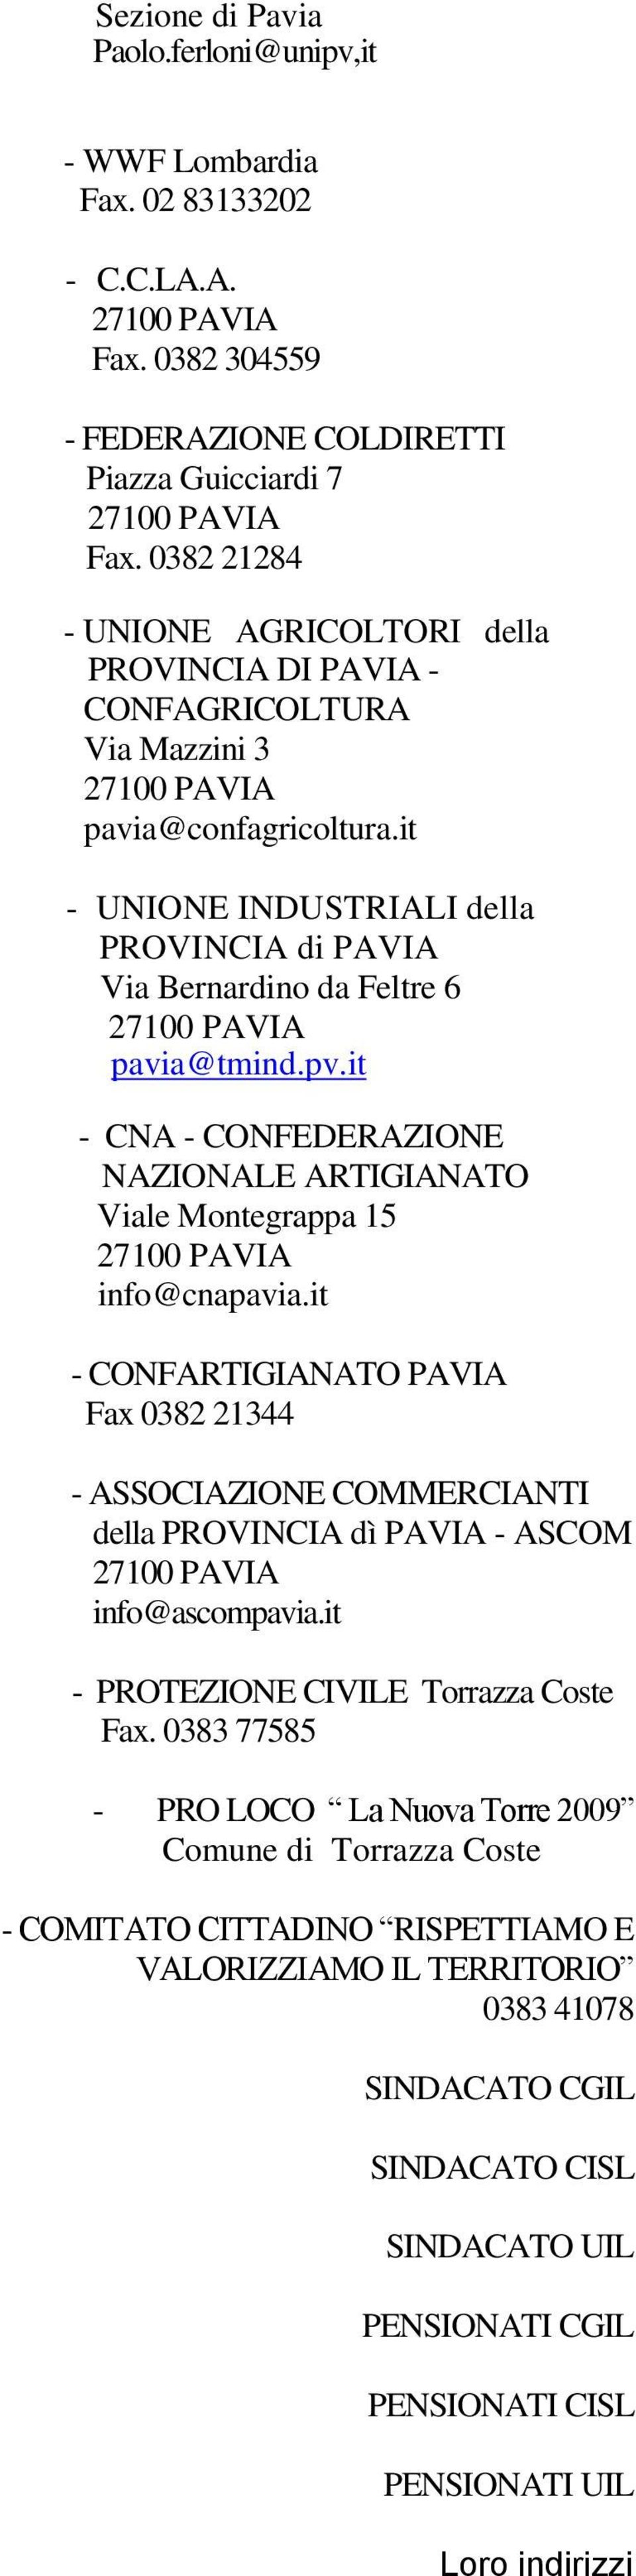 pv.it - CNA - CONFEDERAZIONE NAZIONALE ARTIGIANATO Viale Montegrappa 15 info@cnapavia.